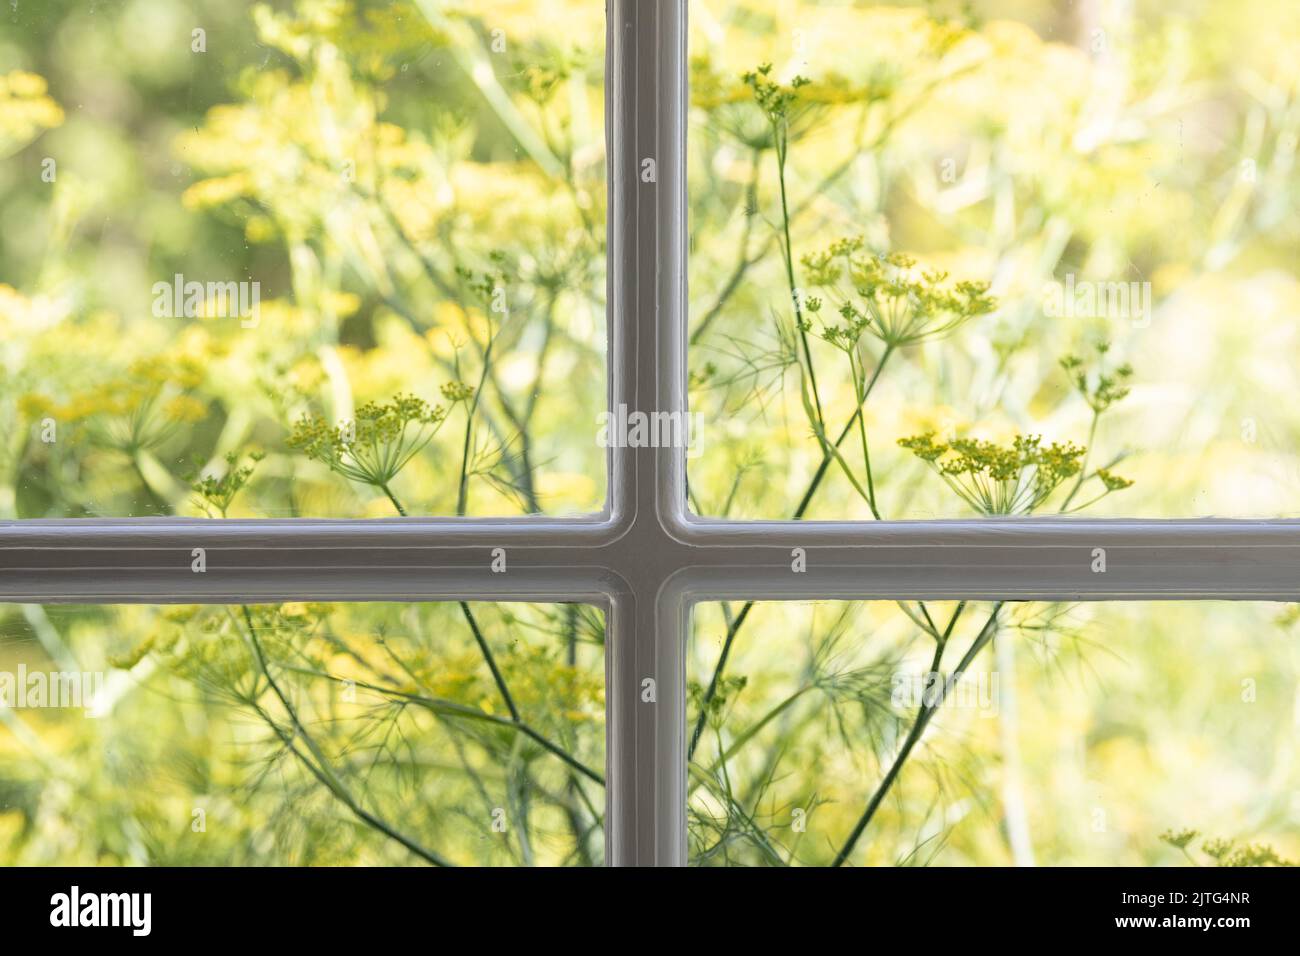 Finocchio ornamentale visto attraverso la finestra della casa - uk Foto Stock